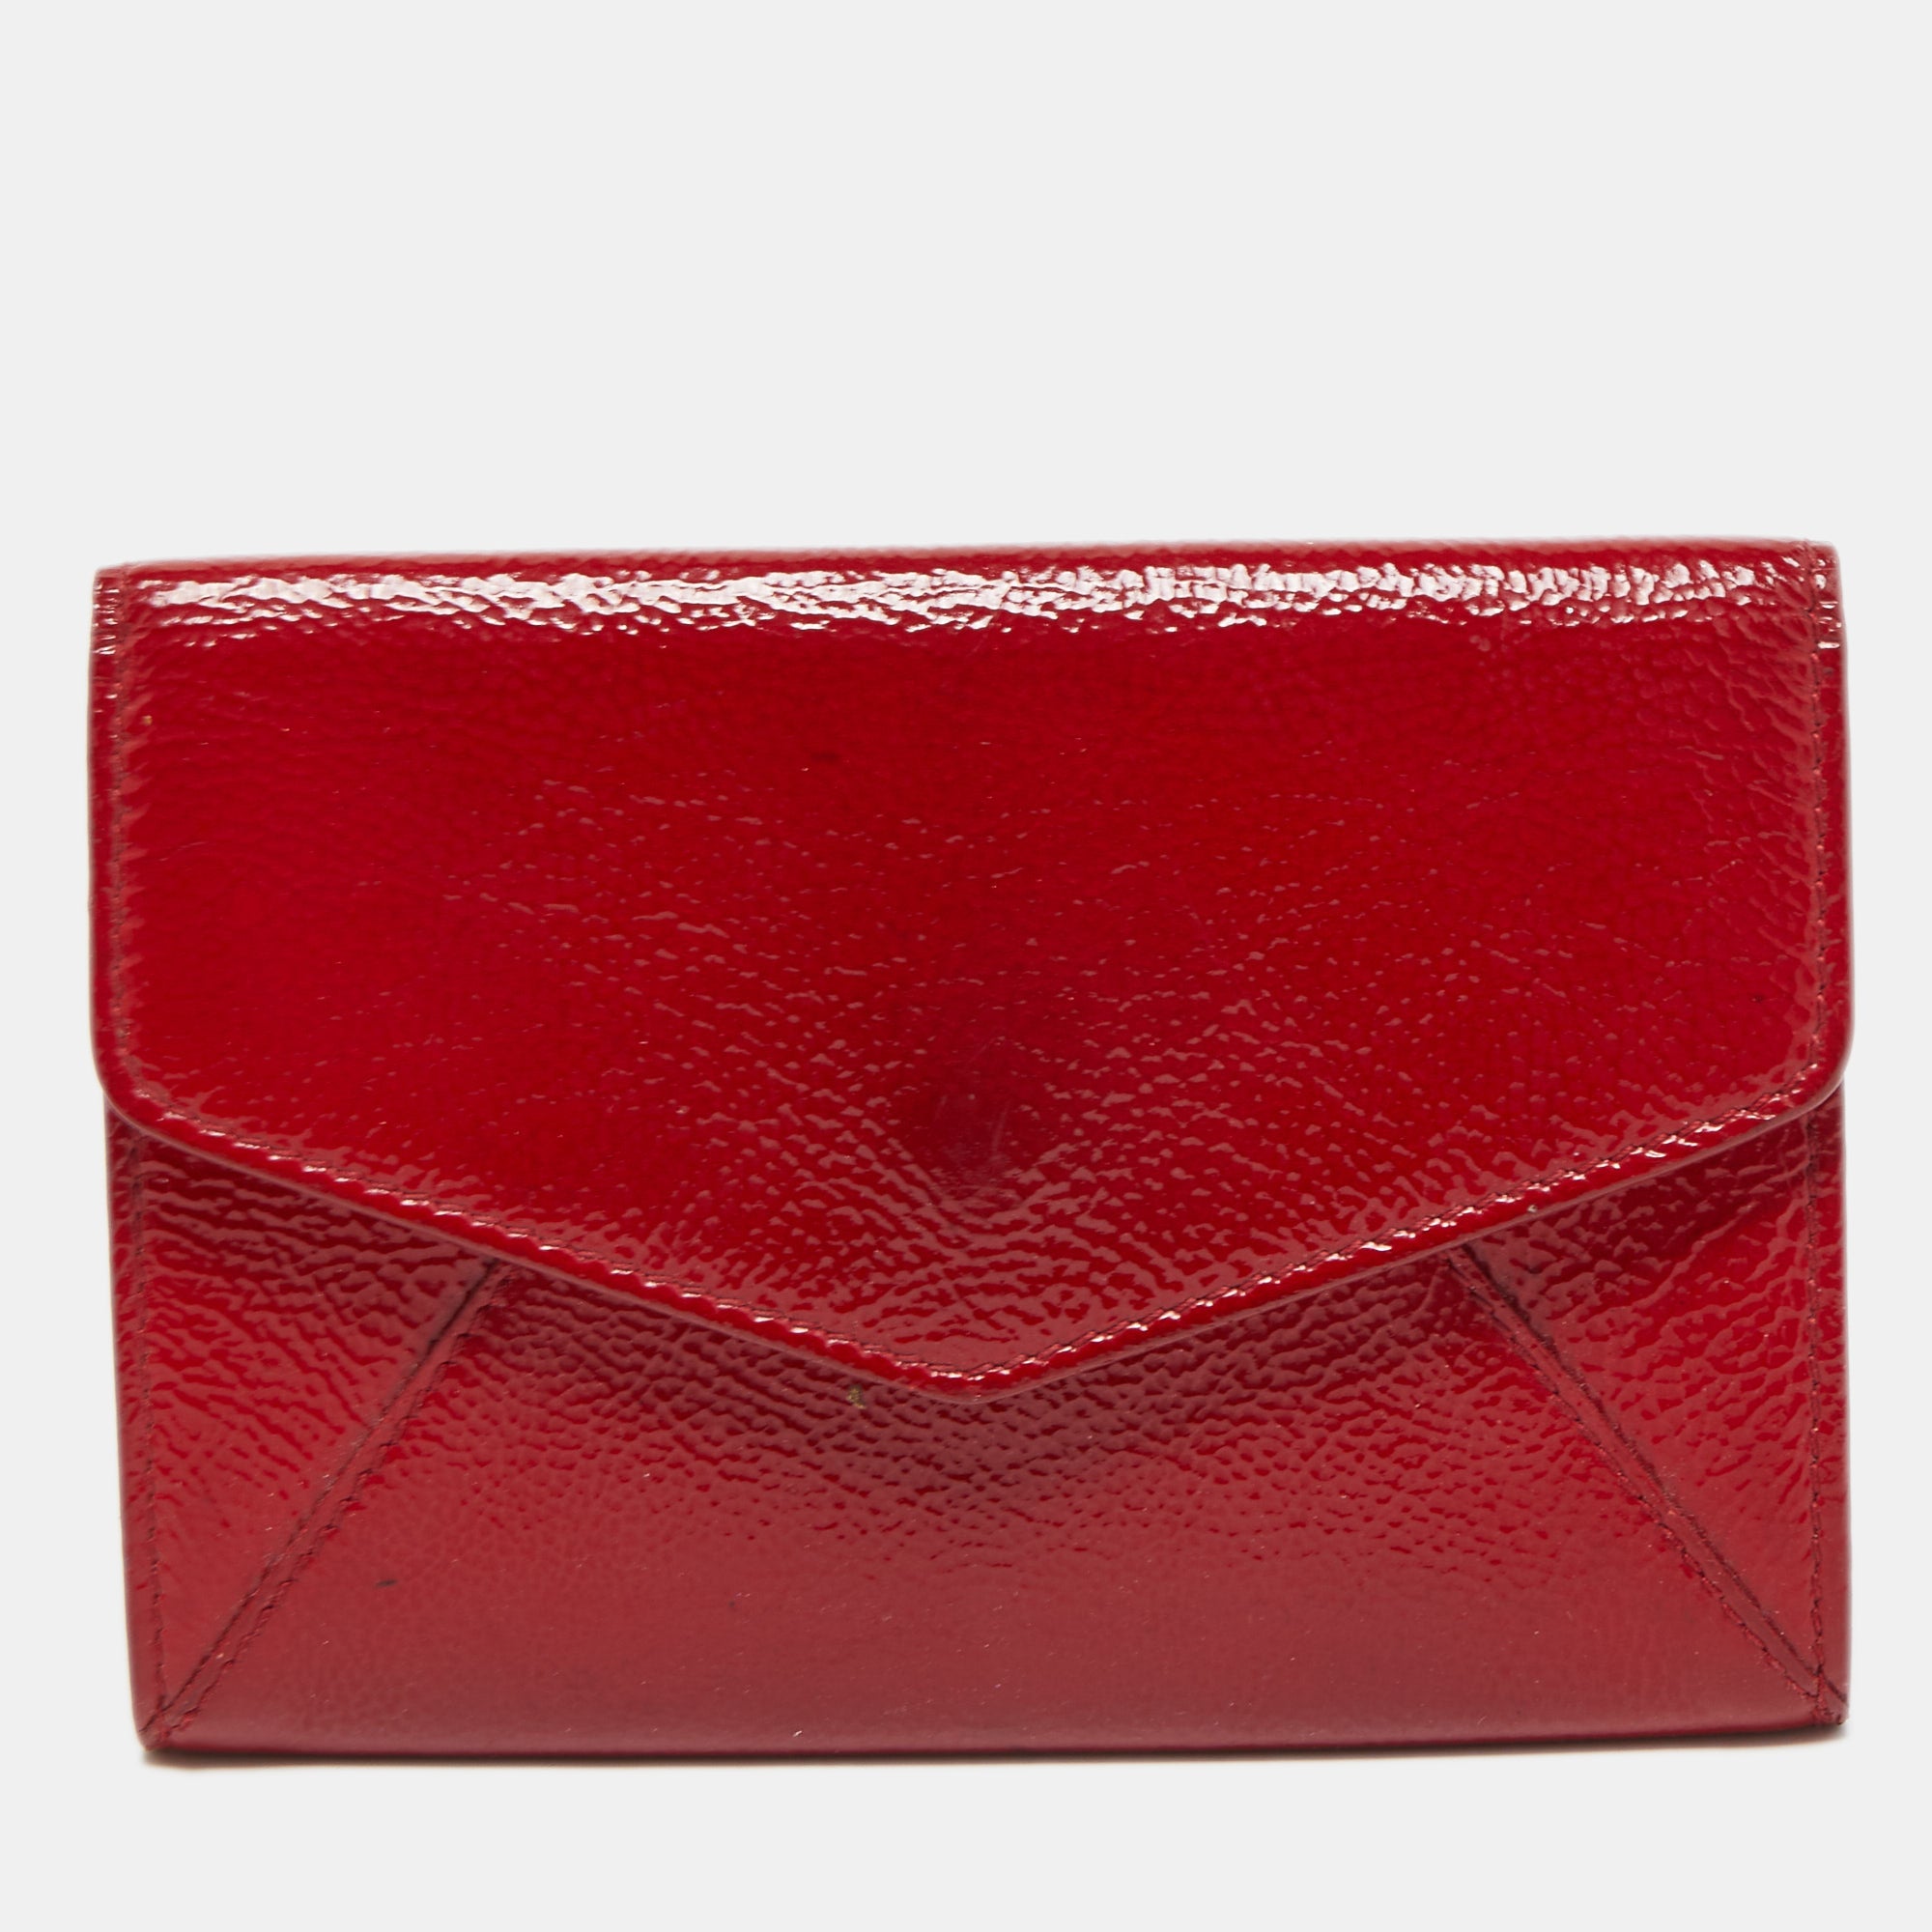 beautiful Yves Saint Laurent l Rive Gauche roady bag in bordeaux red colour  | Vinted